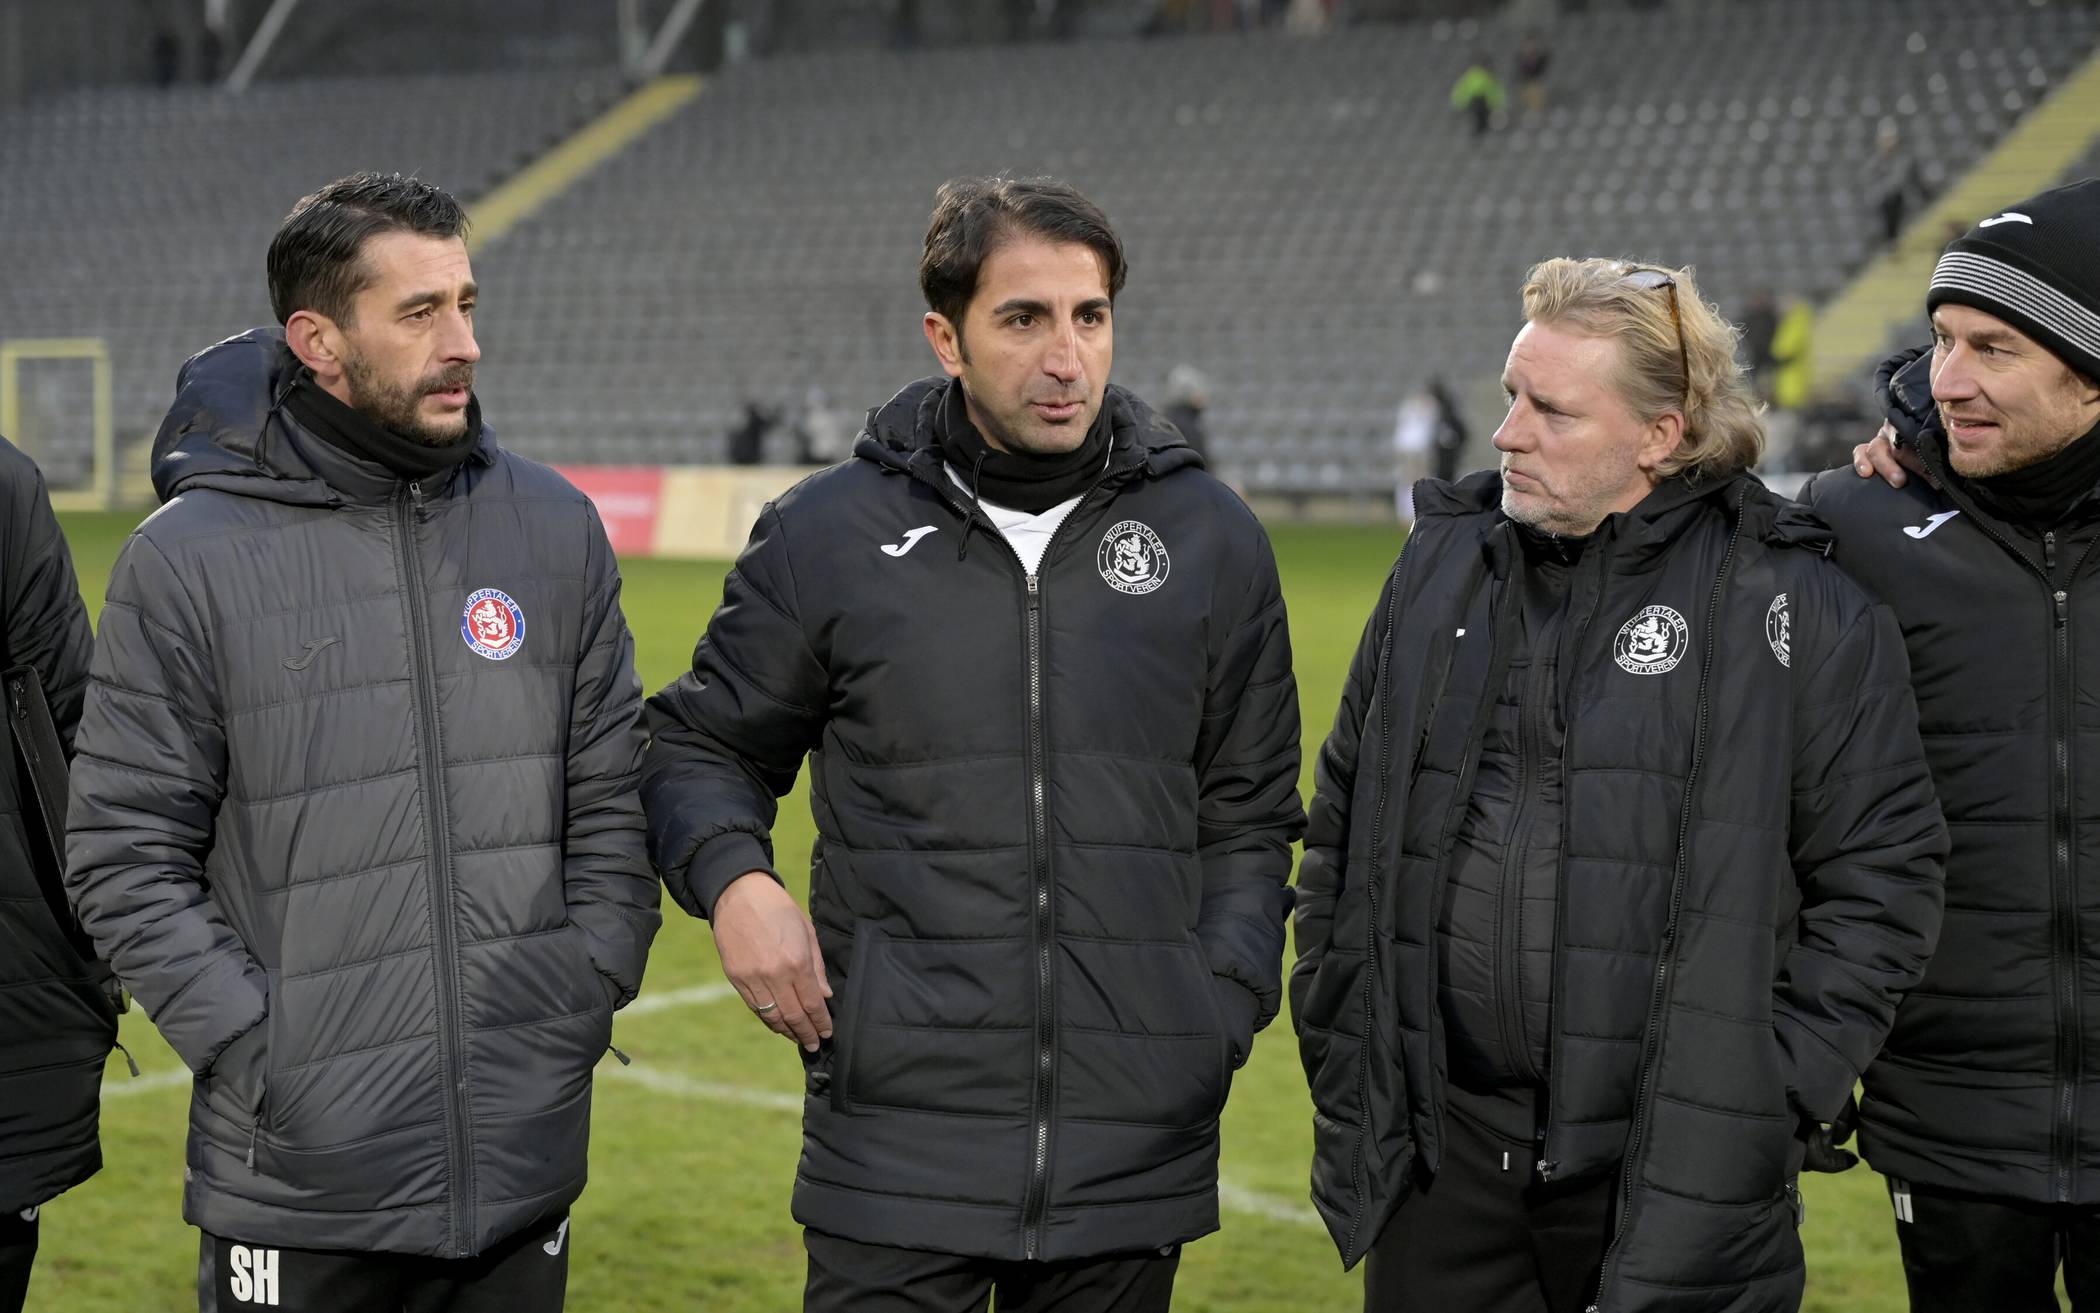  Von li.: Co-Trainer Samir El Hajjaj, Chefcoach Hüzeyfe Dogan und Sportchef Stephan Küsters. 